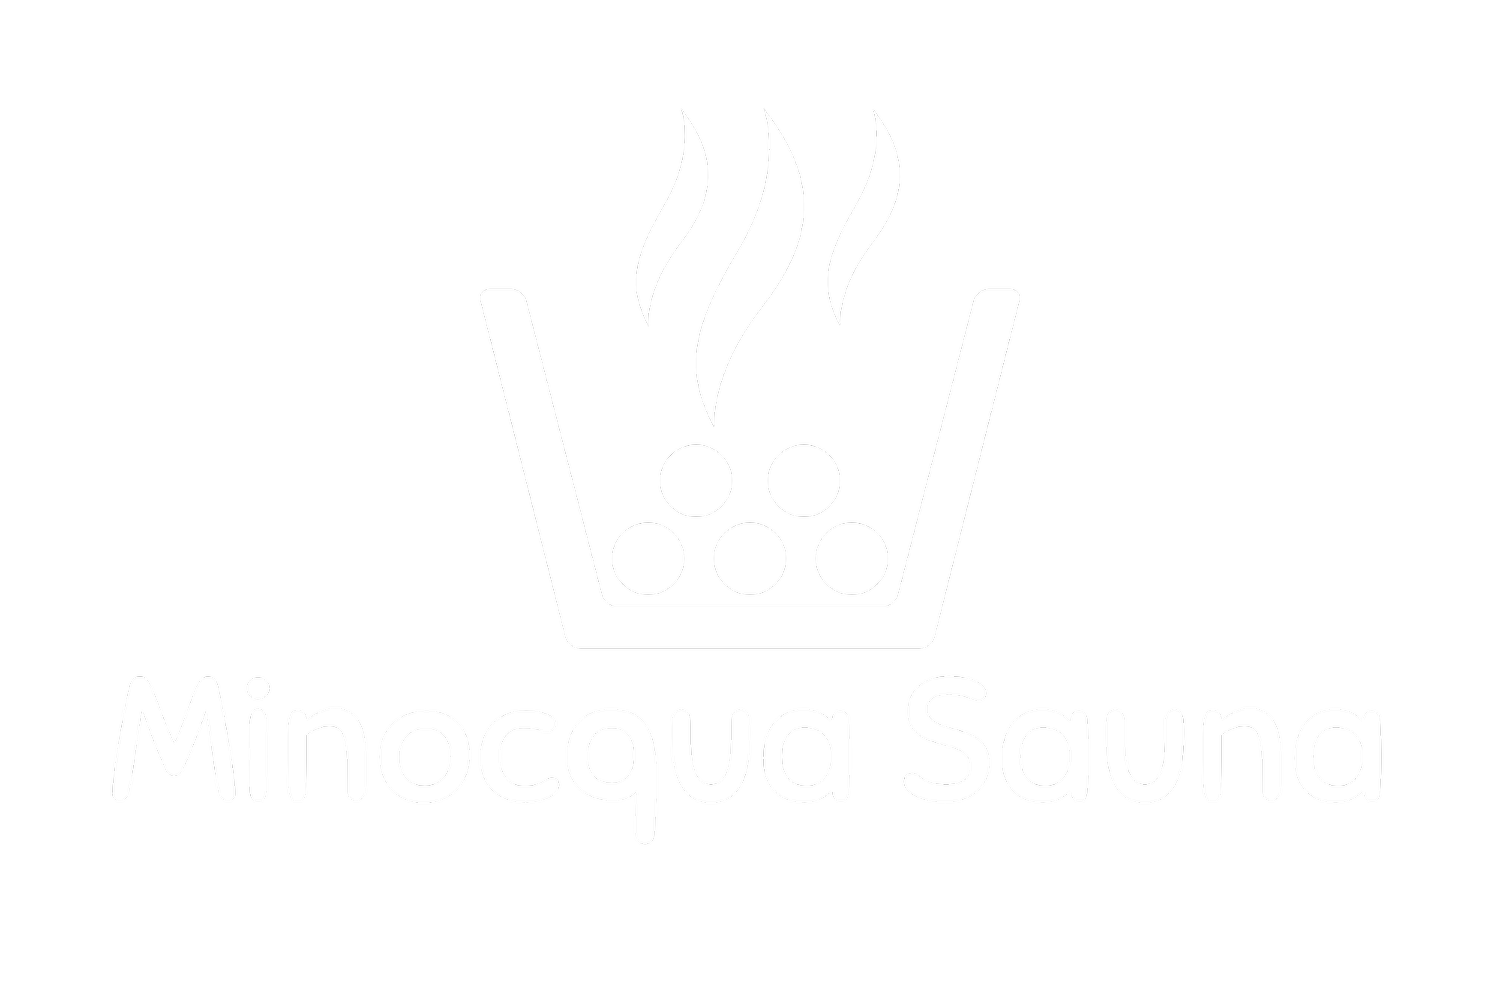 Minocqua Sauna